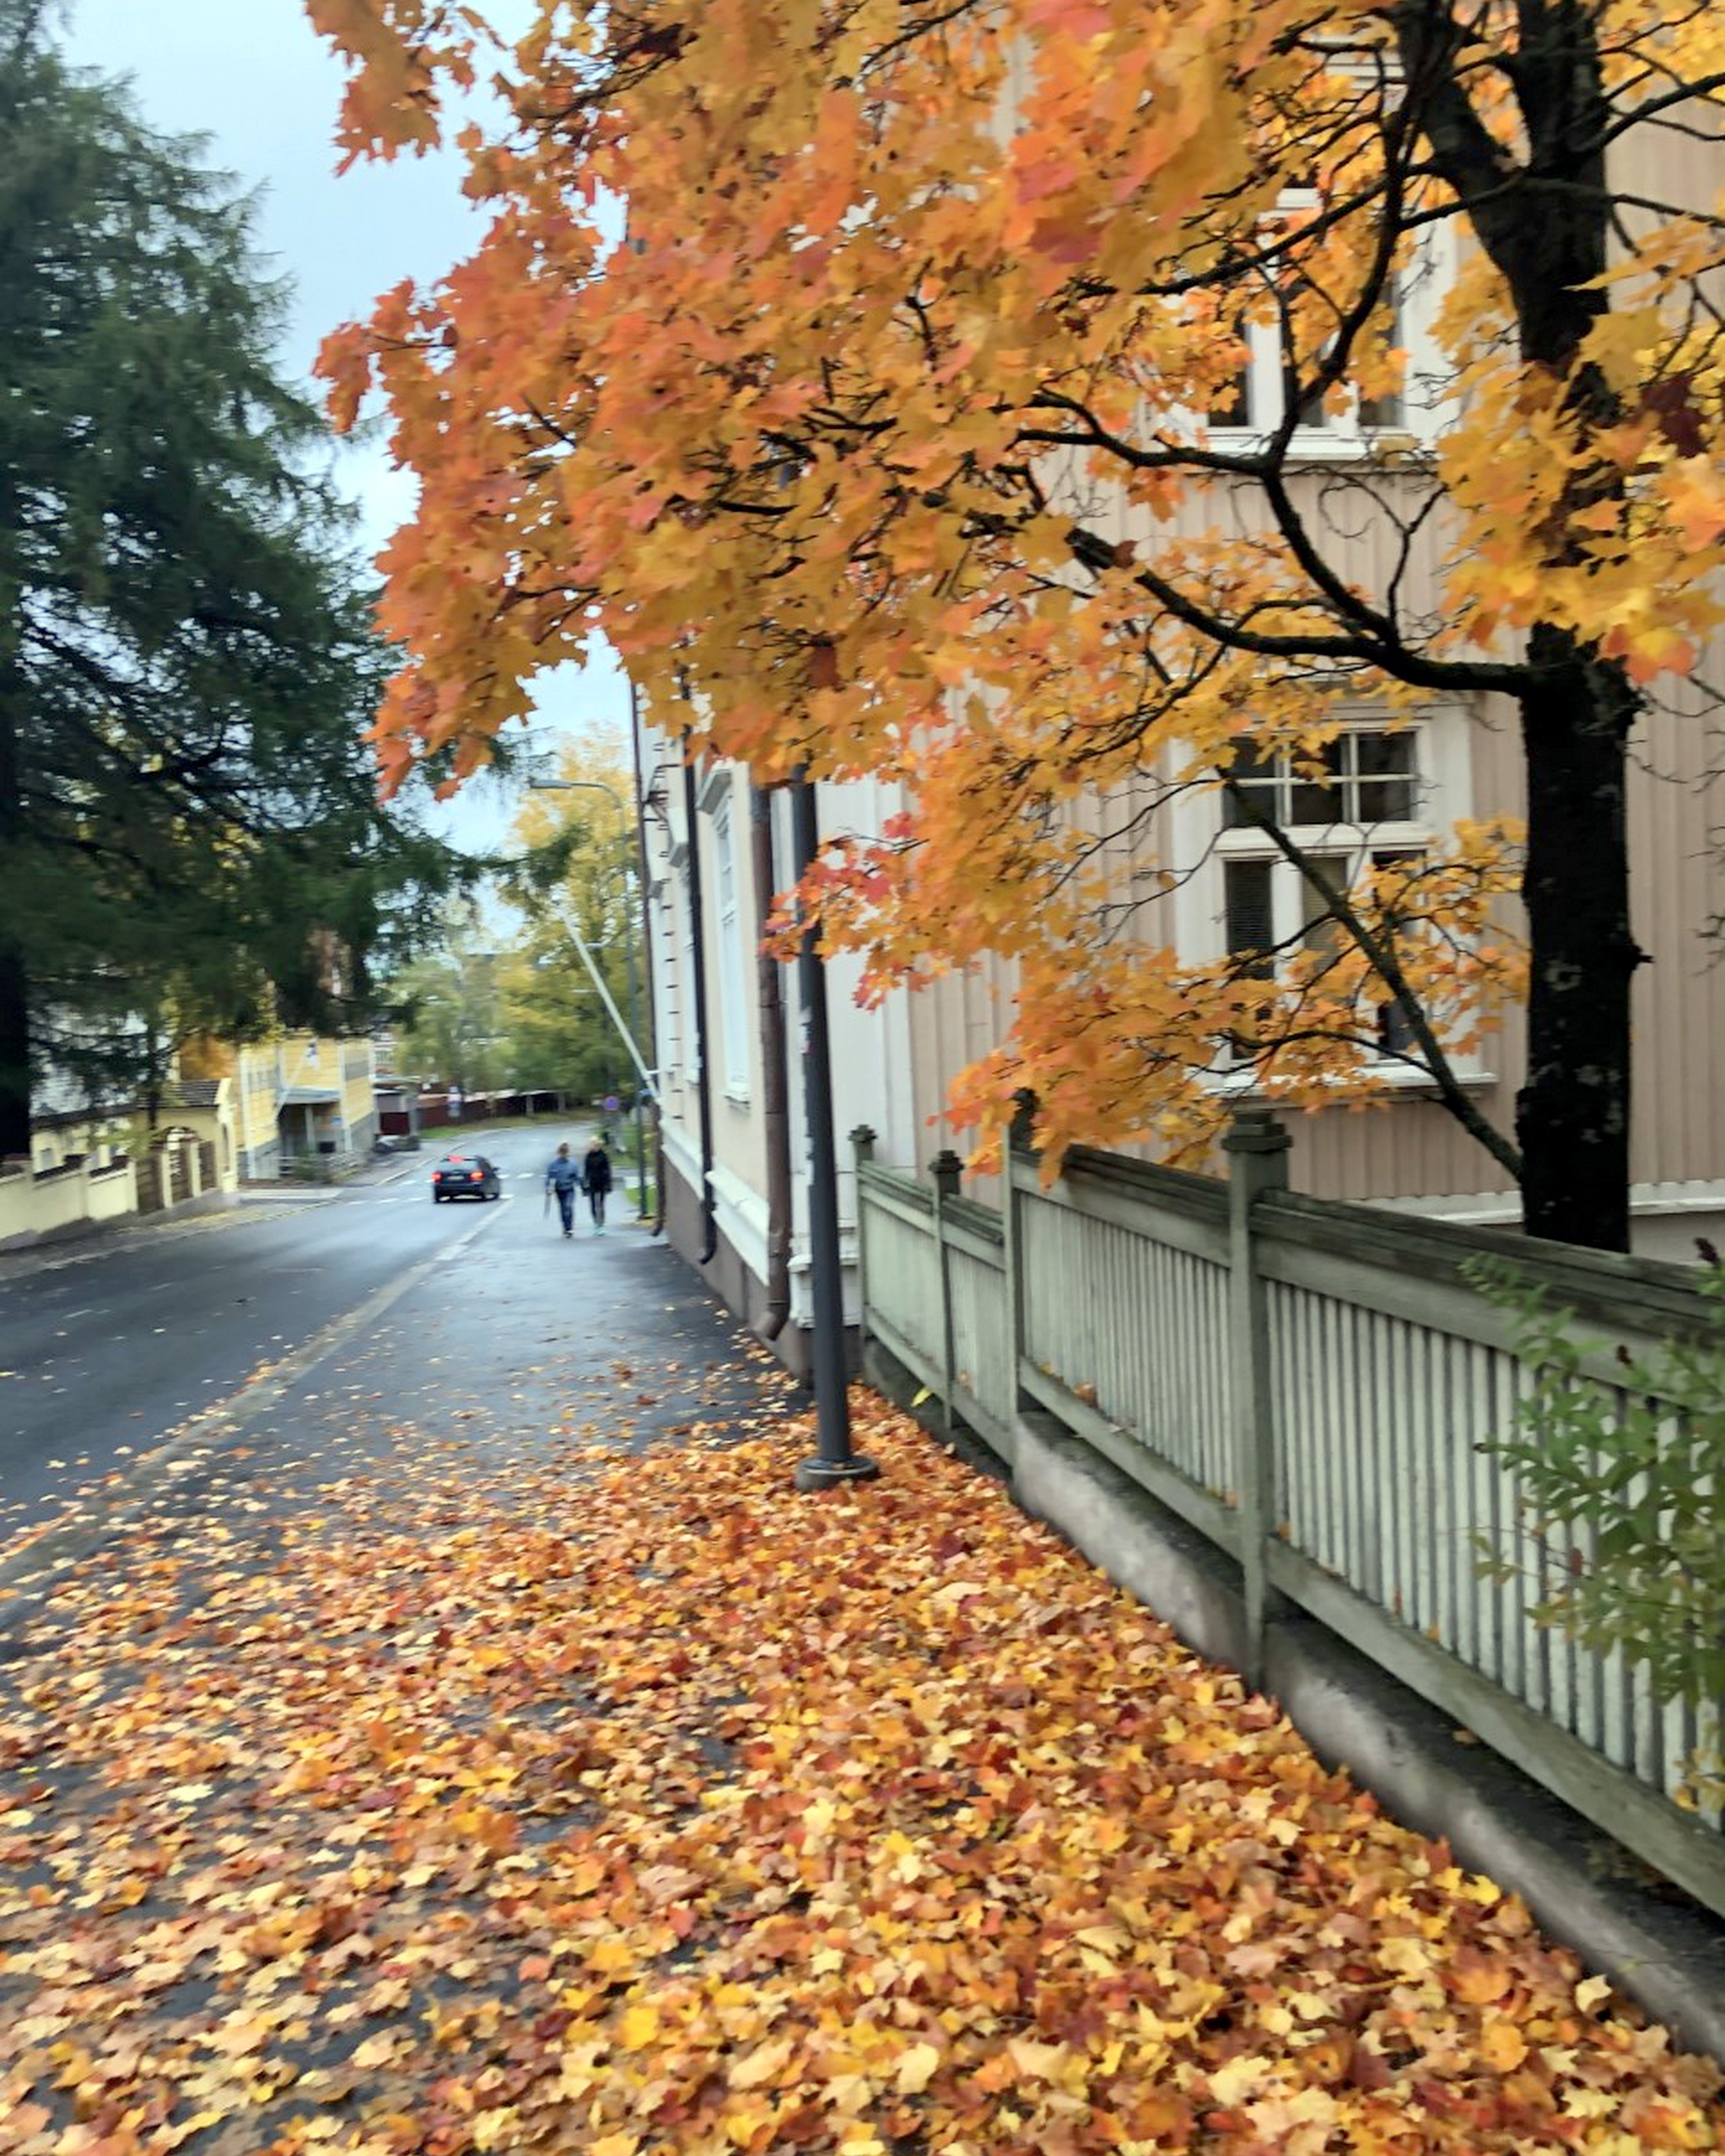 A city street full of orange leaves.